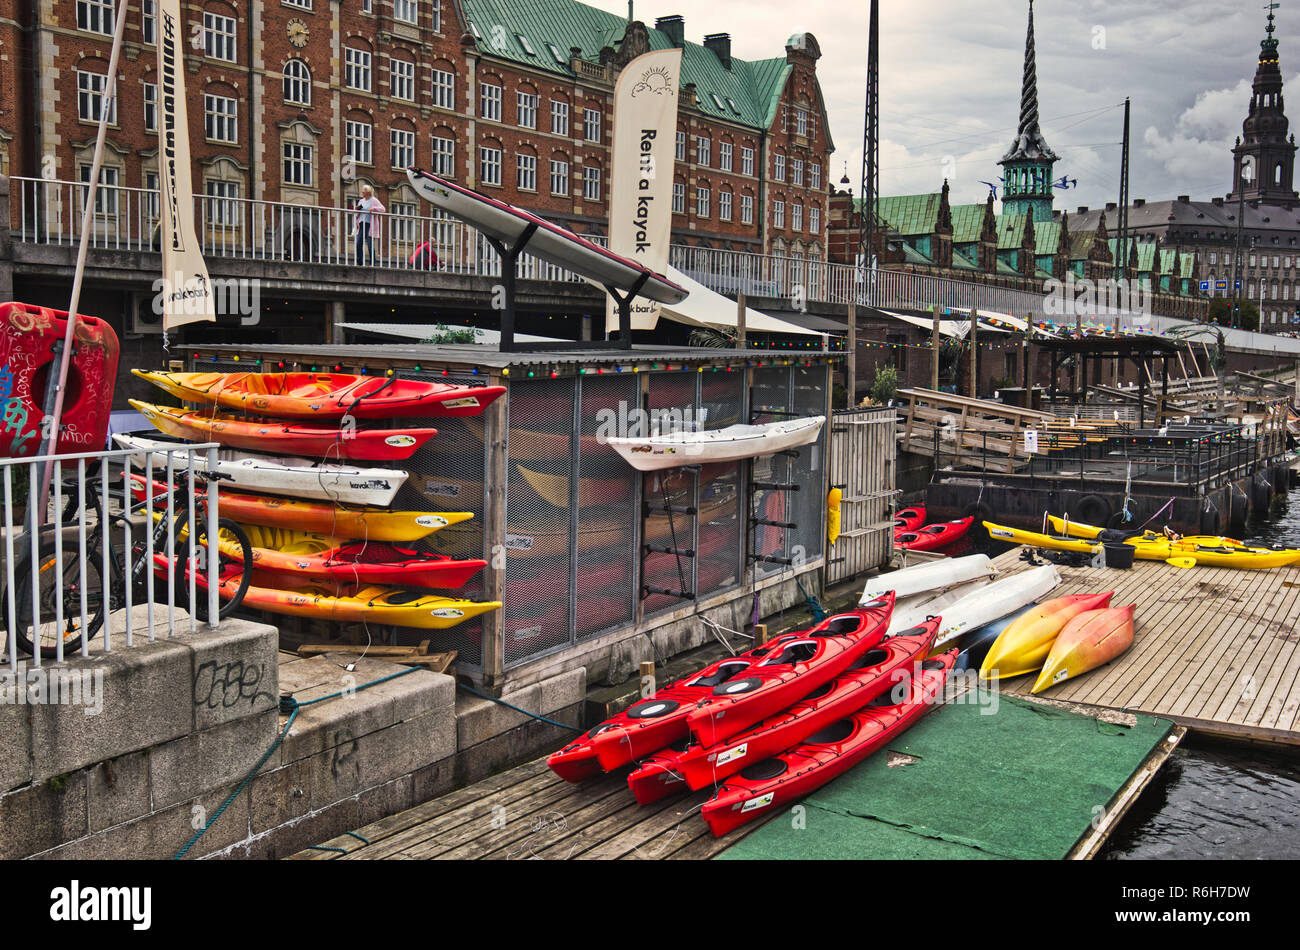 Offre des cours de kayak Kayak République et visites guidées sur les canaux de Copenhague, Danemark, Scandinavie Banque D'Images